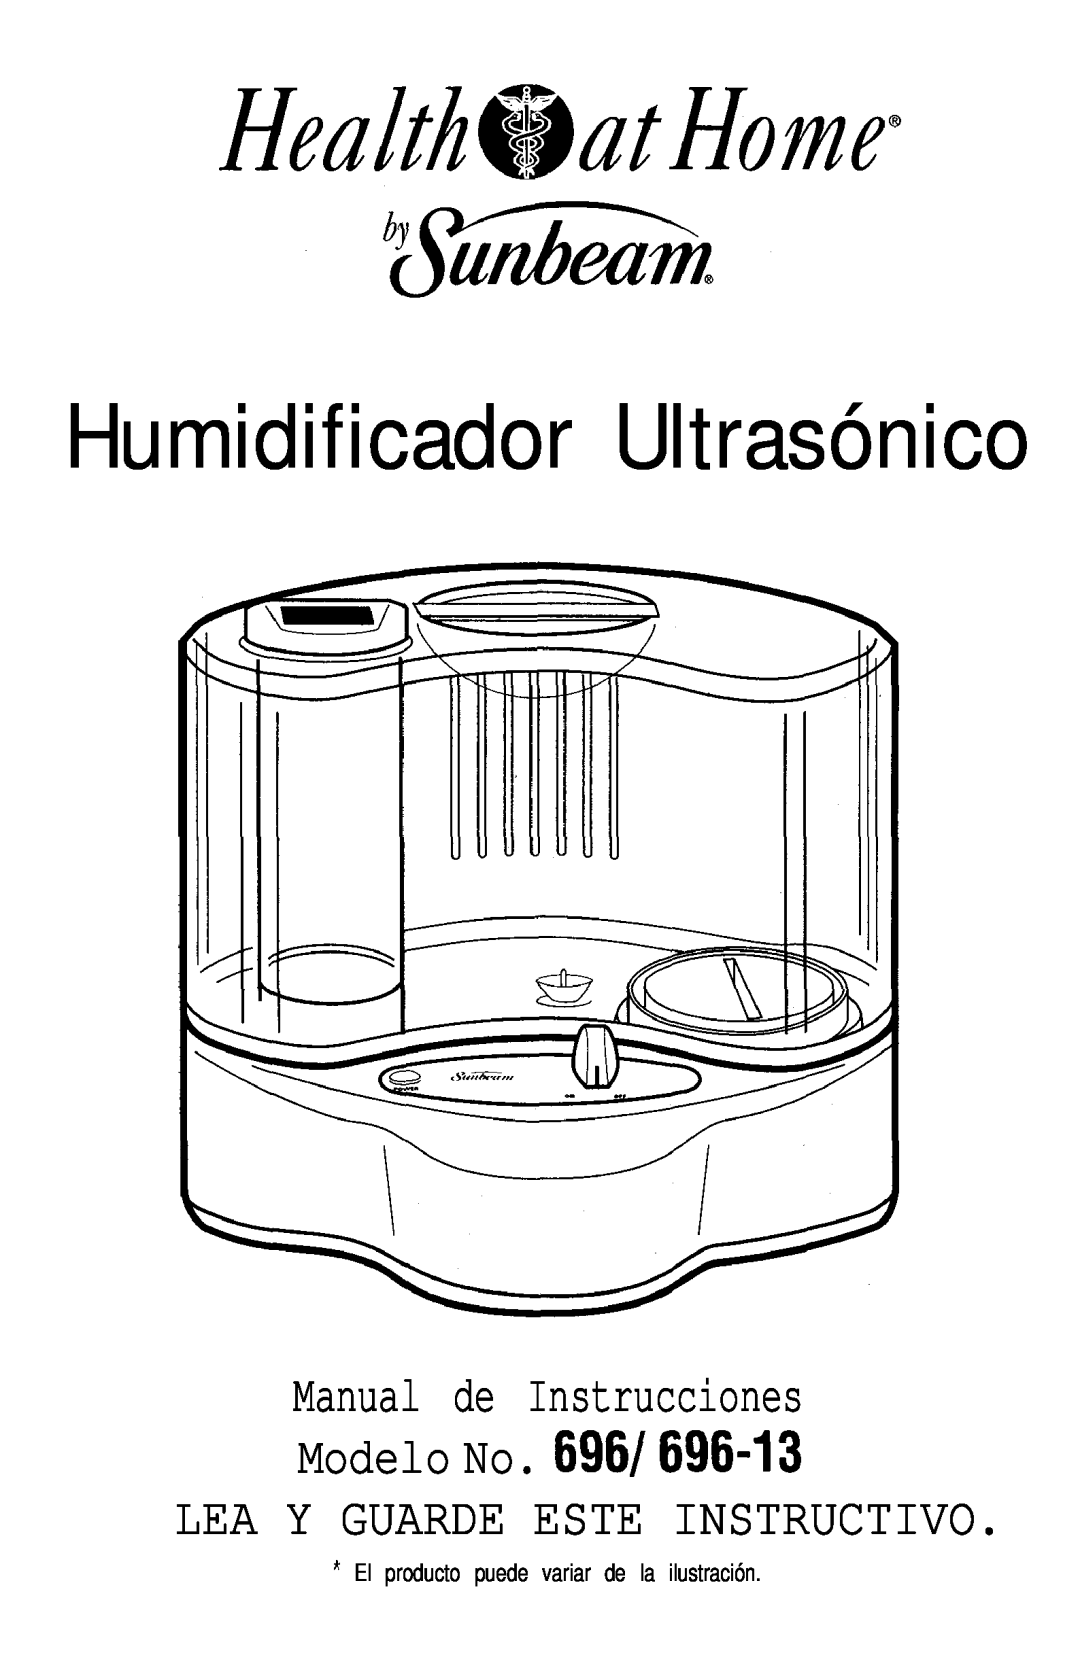 Sunbeam Humidificador Ultrasónico, Lea Y Guarde Este Instructivo, Manual de Instrucciones Modelo No. 696/696-13 